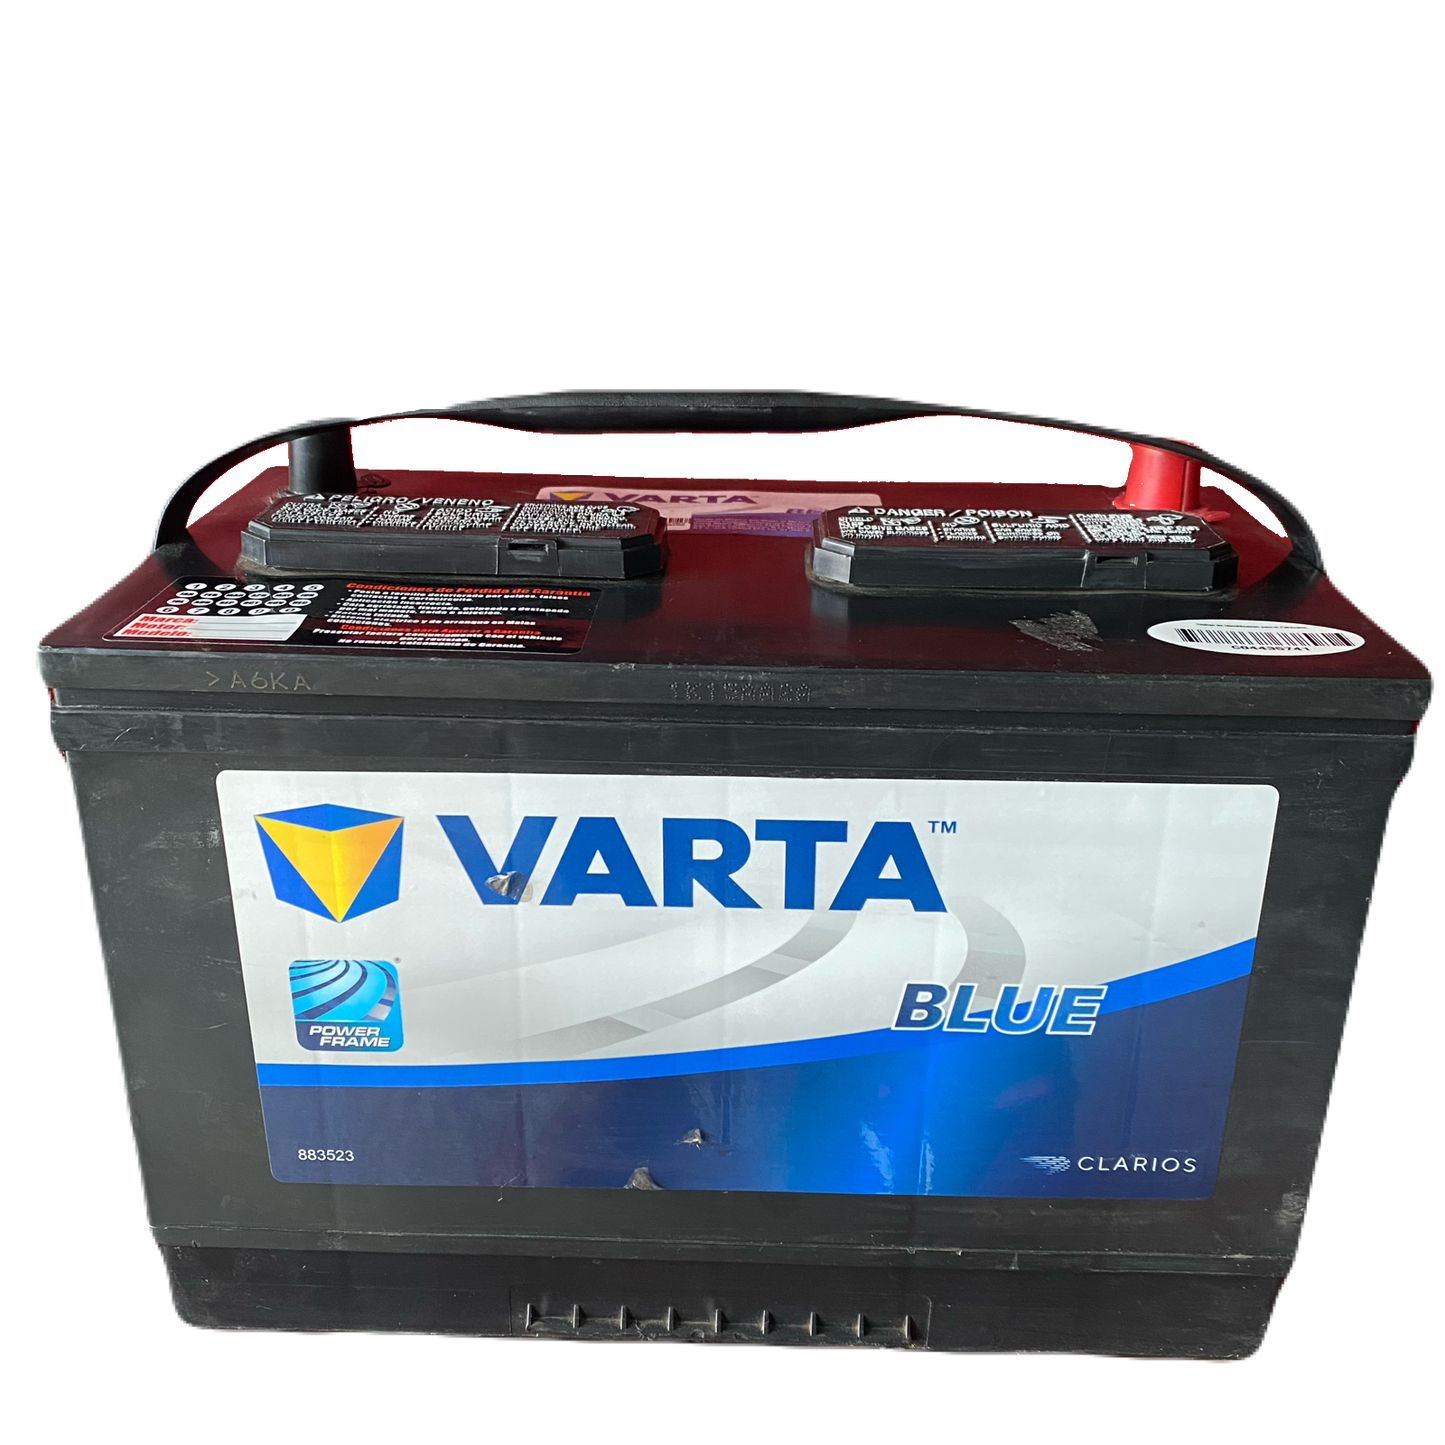 Varta 27-700 Battery